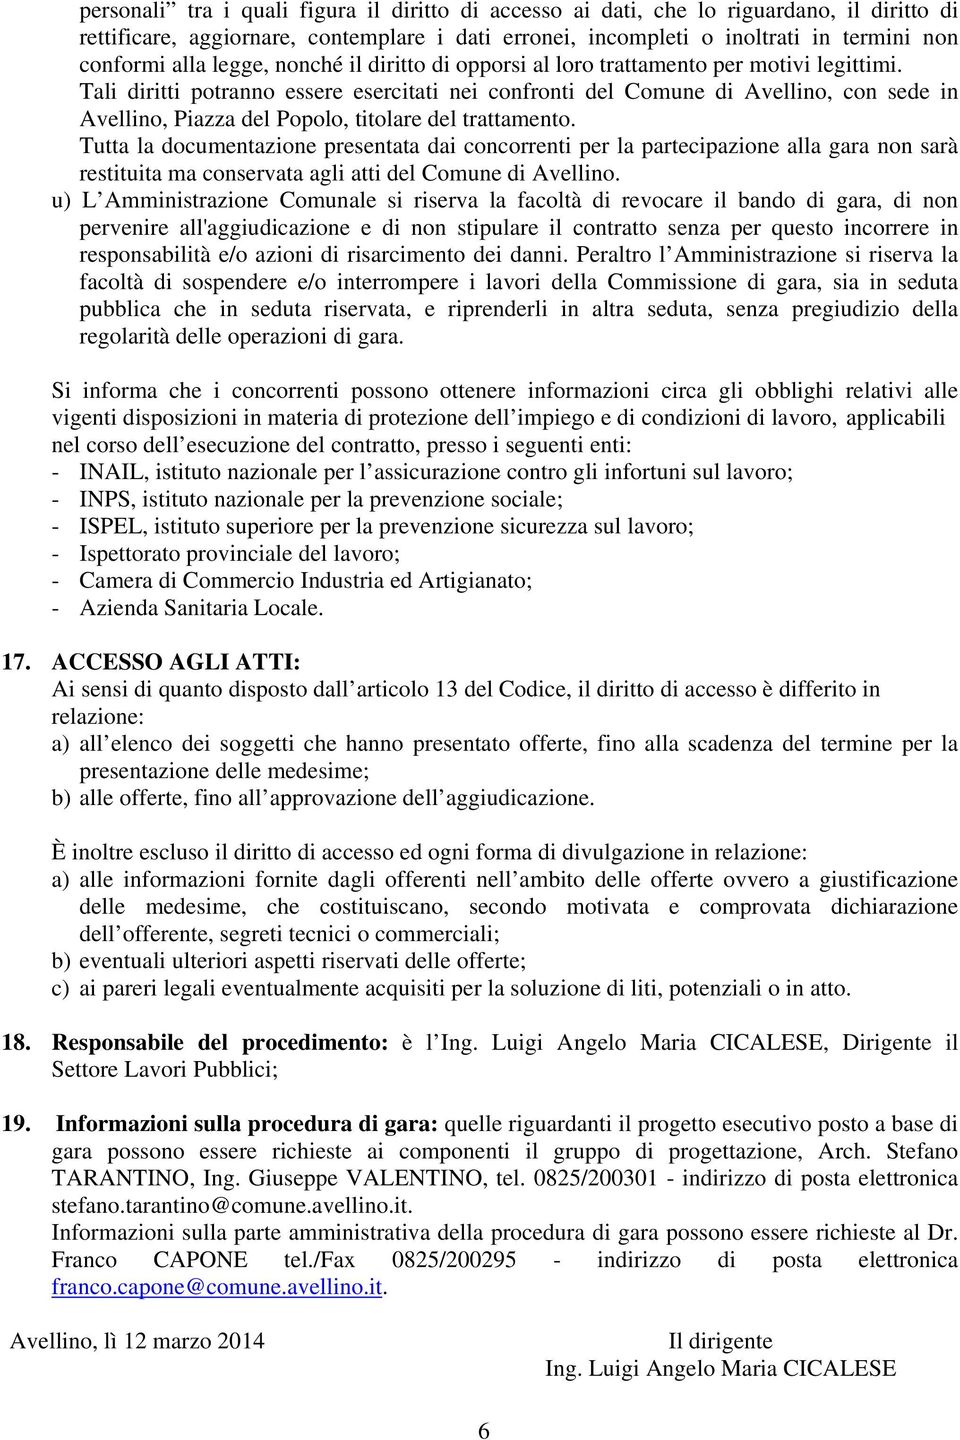 Tali diritti potranno essere esercitati nei confronti del Comune di Avellino, con sede in Avellino, Piazza del Popolo, titolare del trattamento.